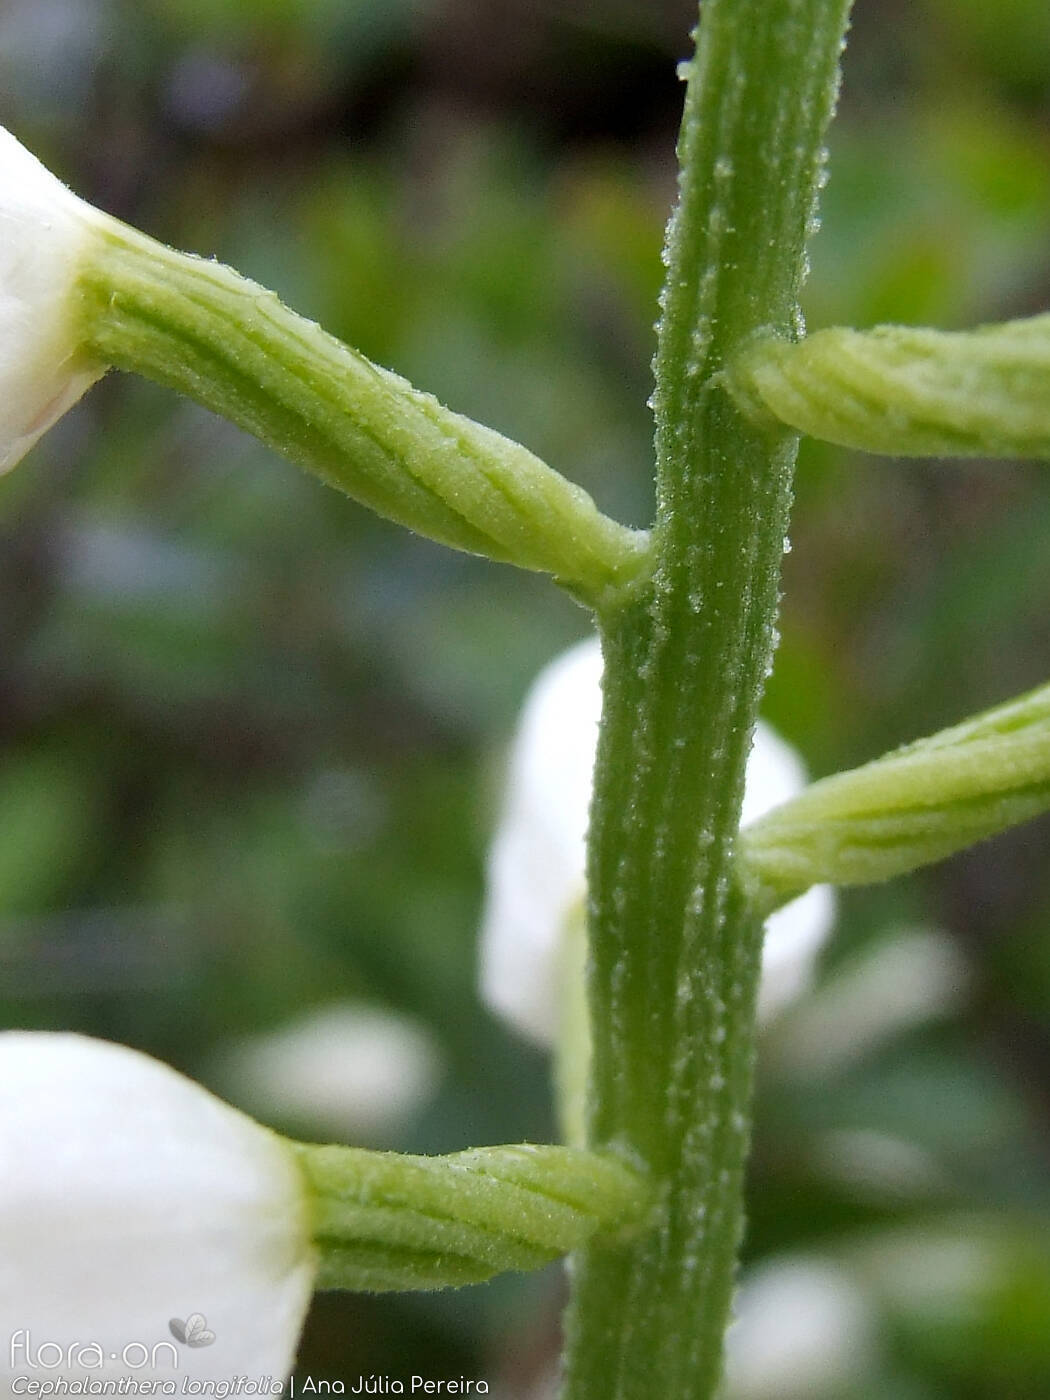 Cephalanthera longifolia - Flor (close-up) | Ana Júlia Pereira; CC BY-NC 4.0